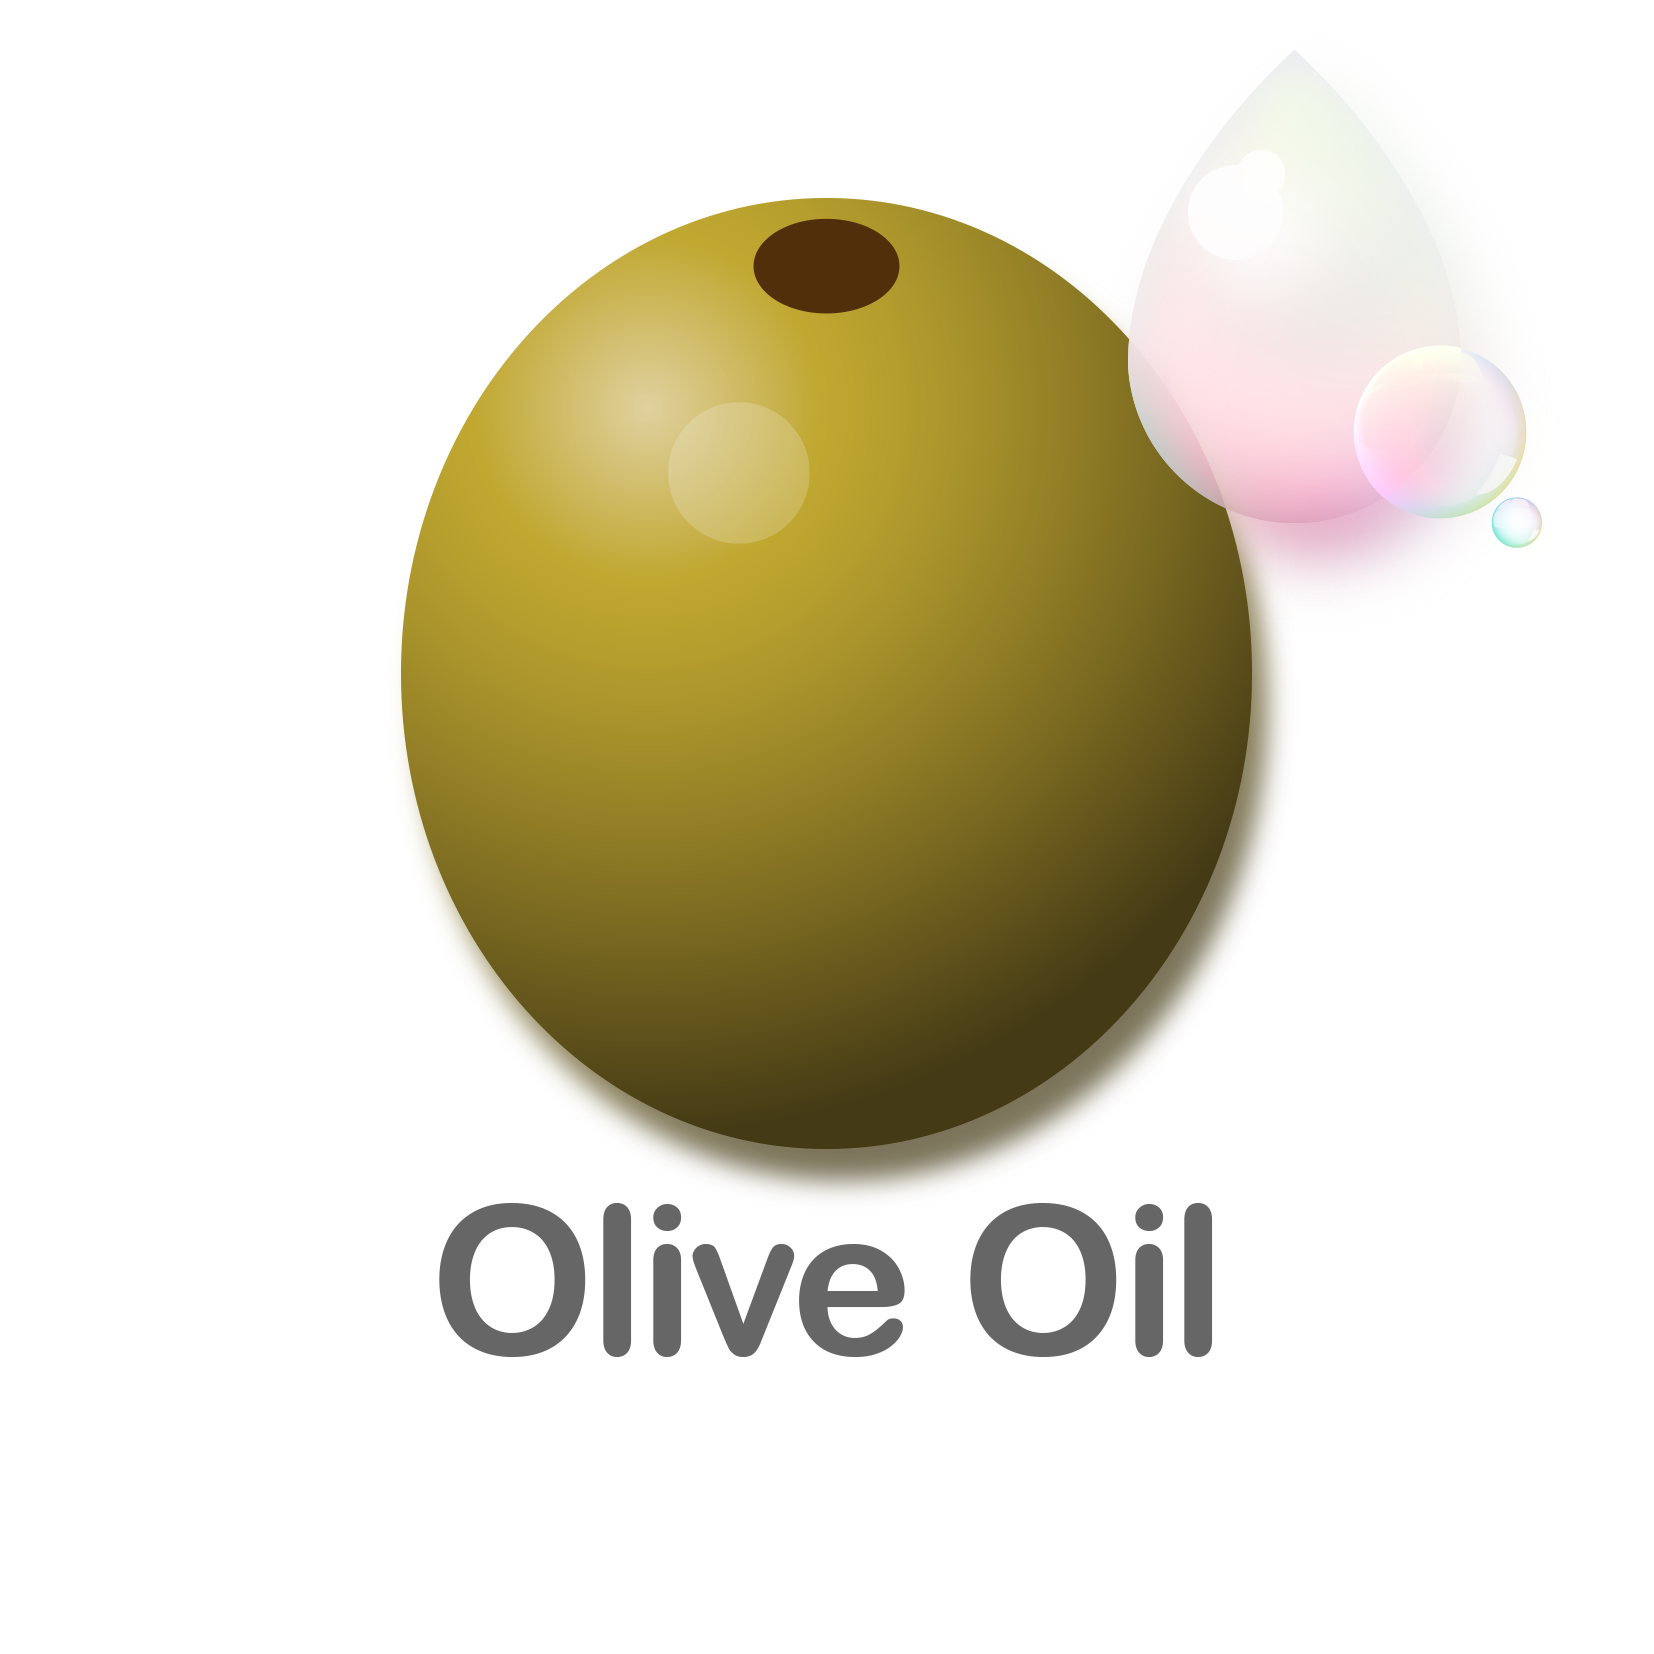 Olive Oil (Copy)